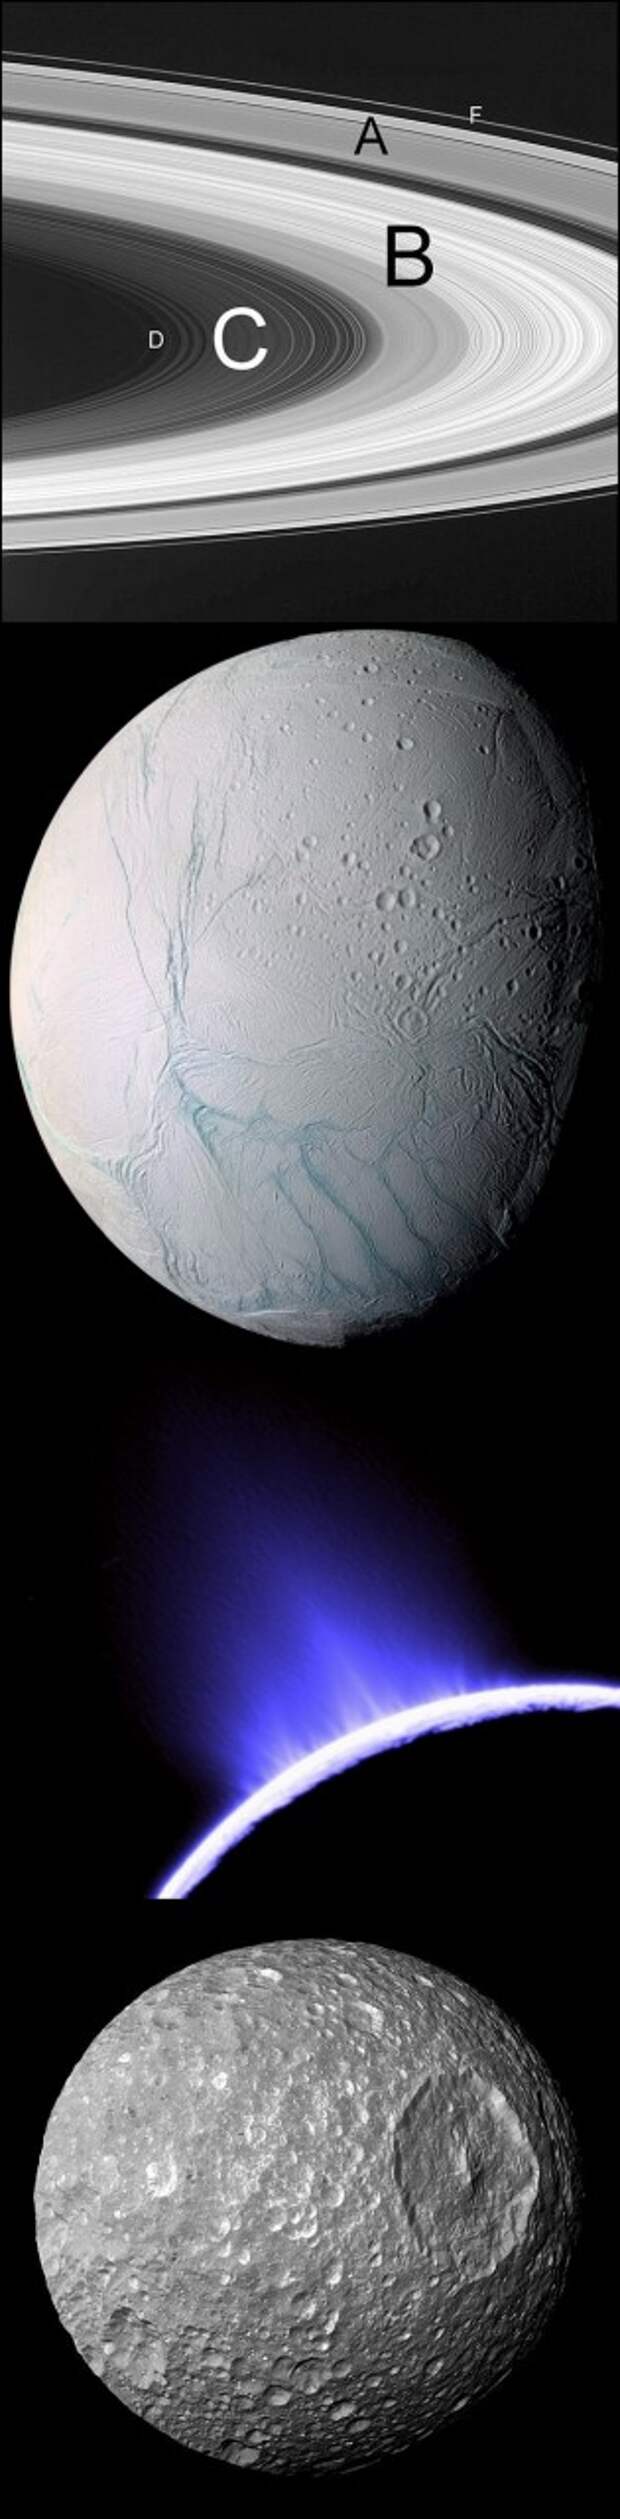 Энцелад с молодыми гладкими поверхностями вулканического происхождения контрастирует с кратерными ландшафтами Мимаса («Звезды смерти»). В центре: извержения на Энцеладе видны из космоса. (Здесь и ниже илл. NASA, JPL, UA.)